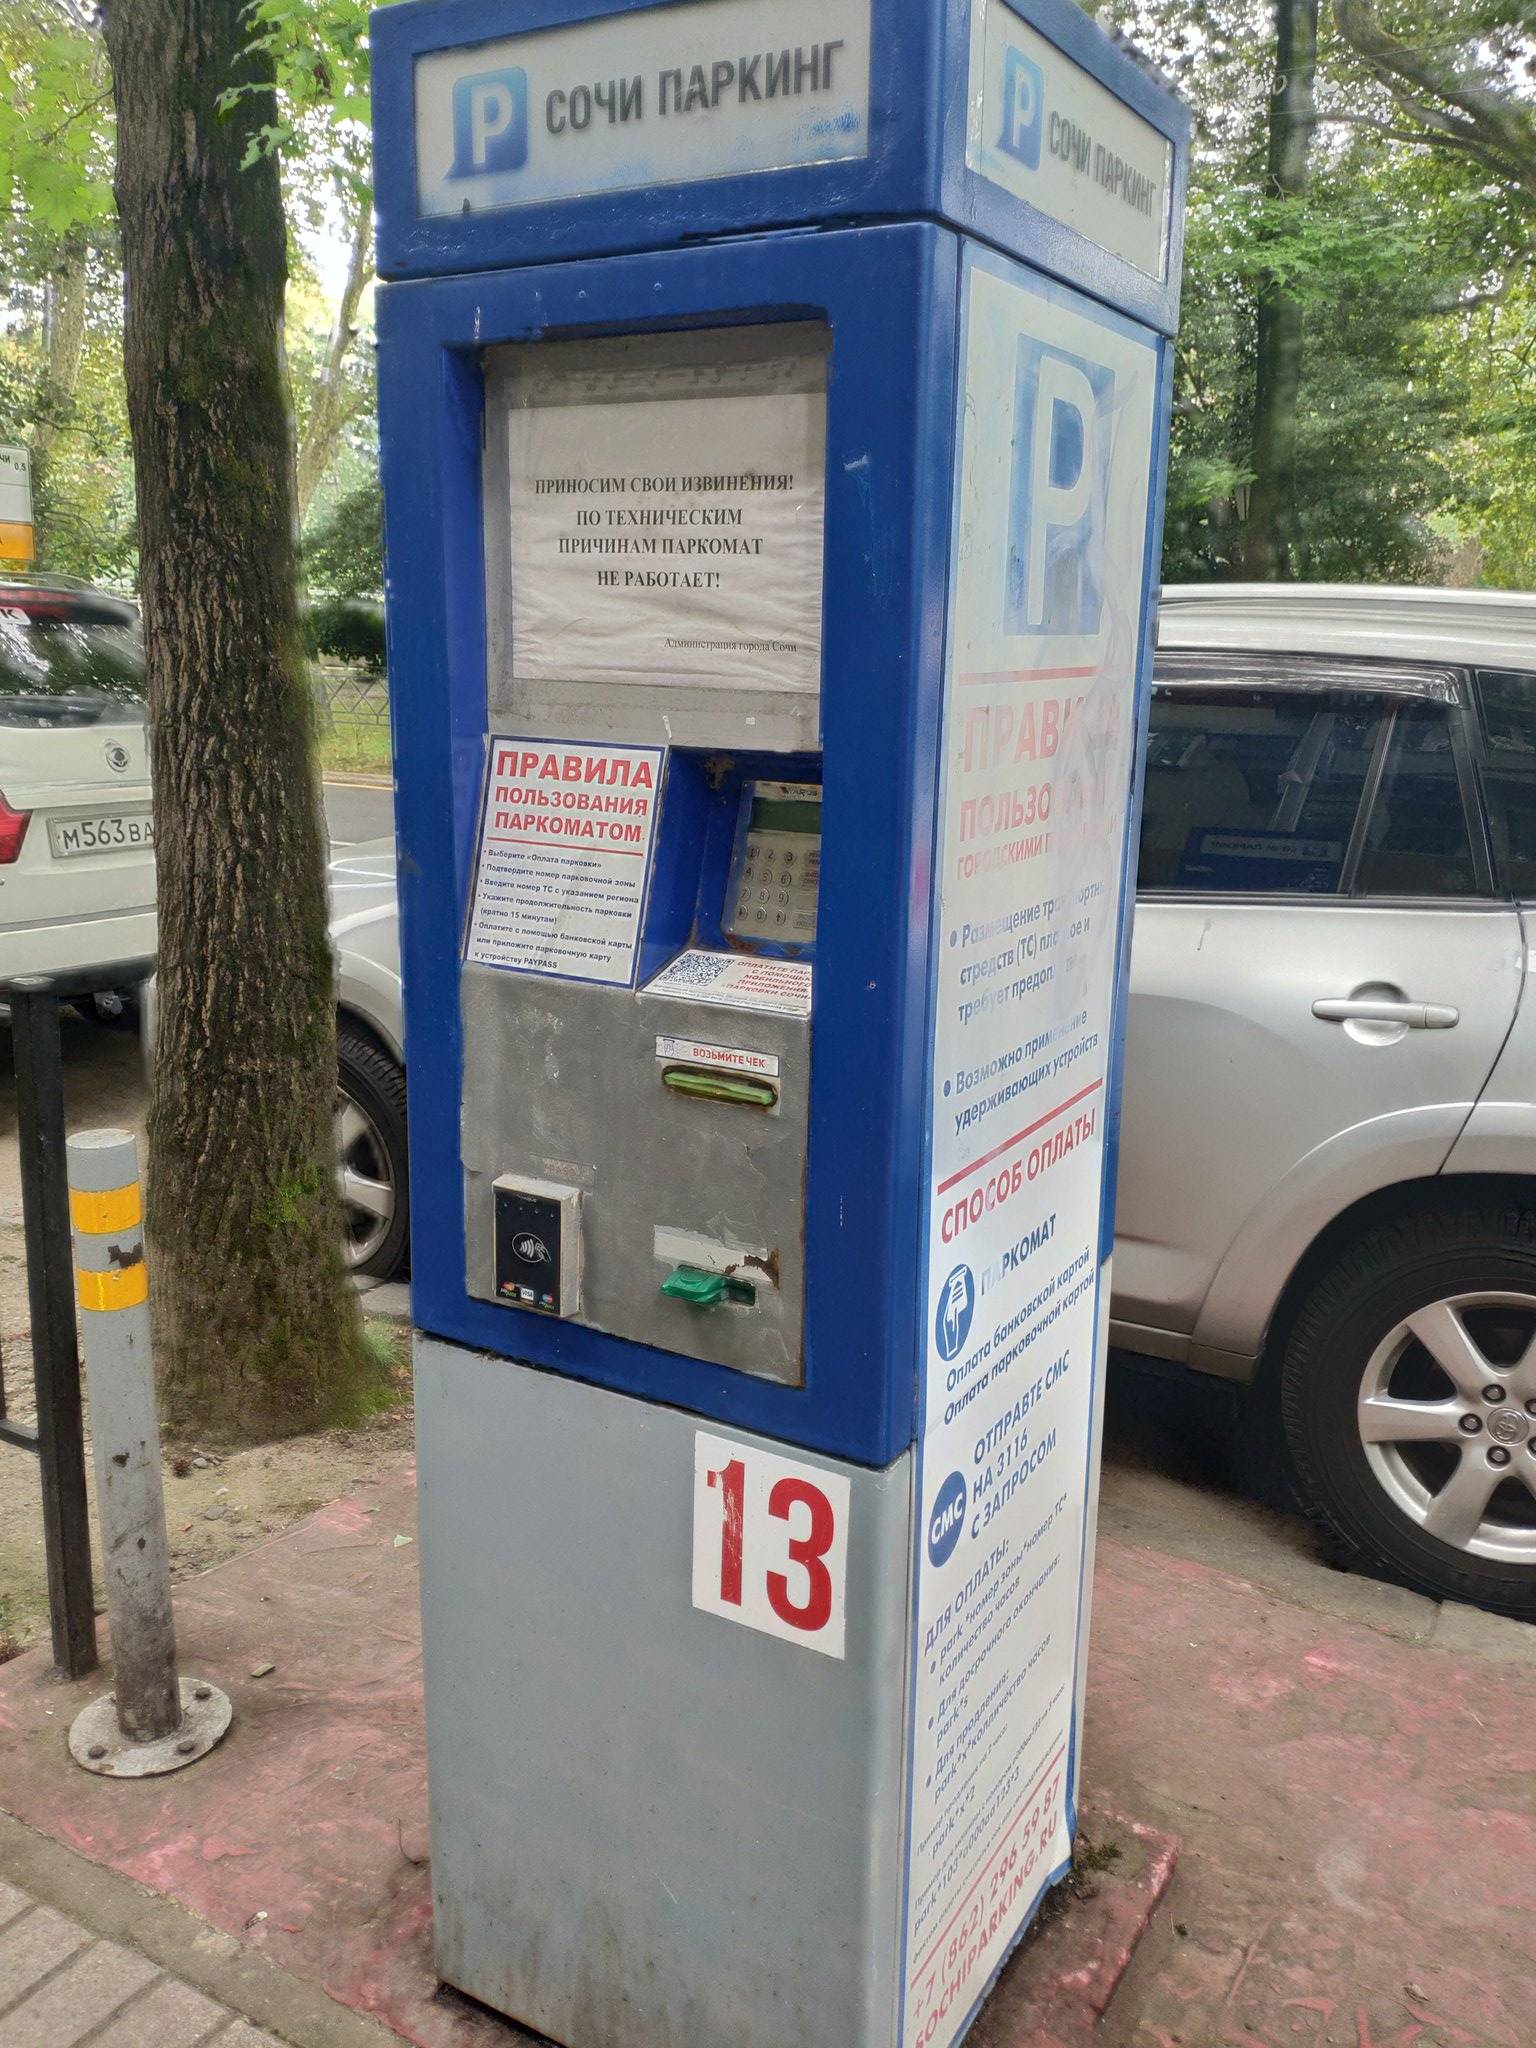 Парковка в польше: правила и как пользоваться паркоматом в 2019